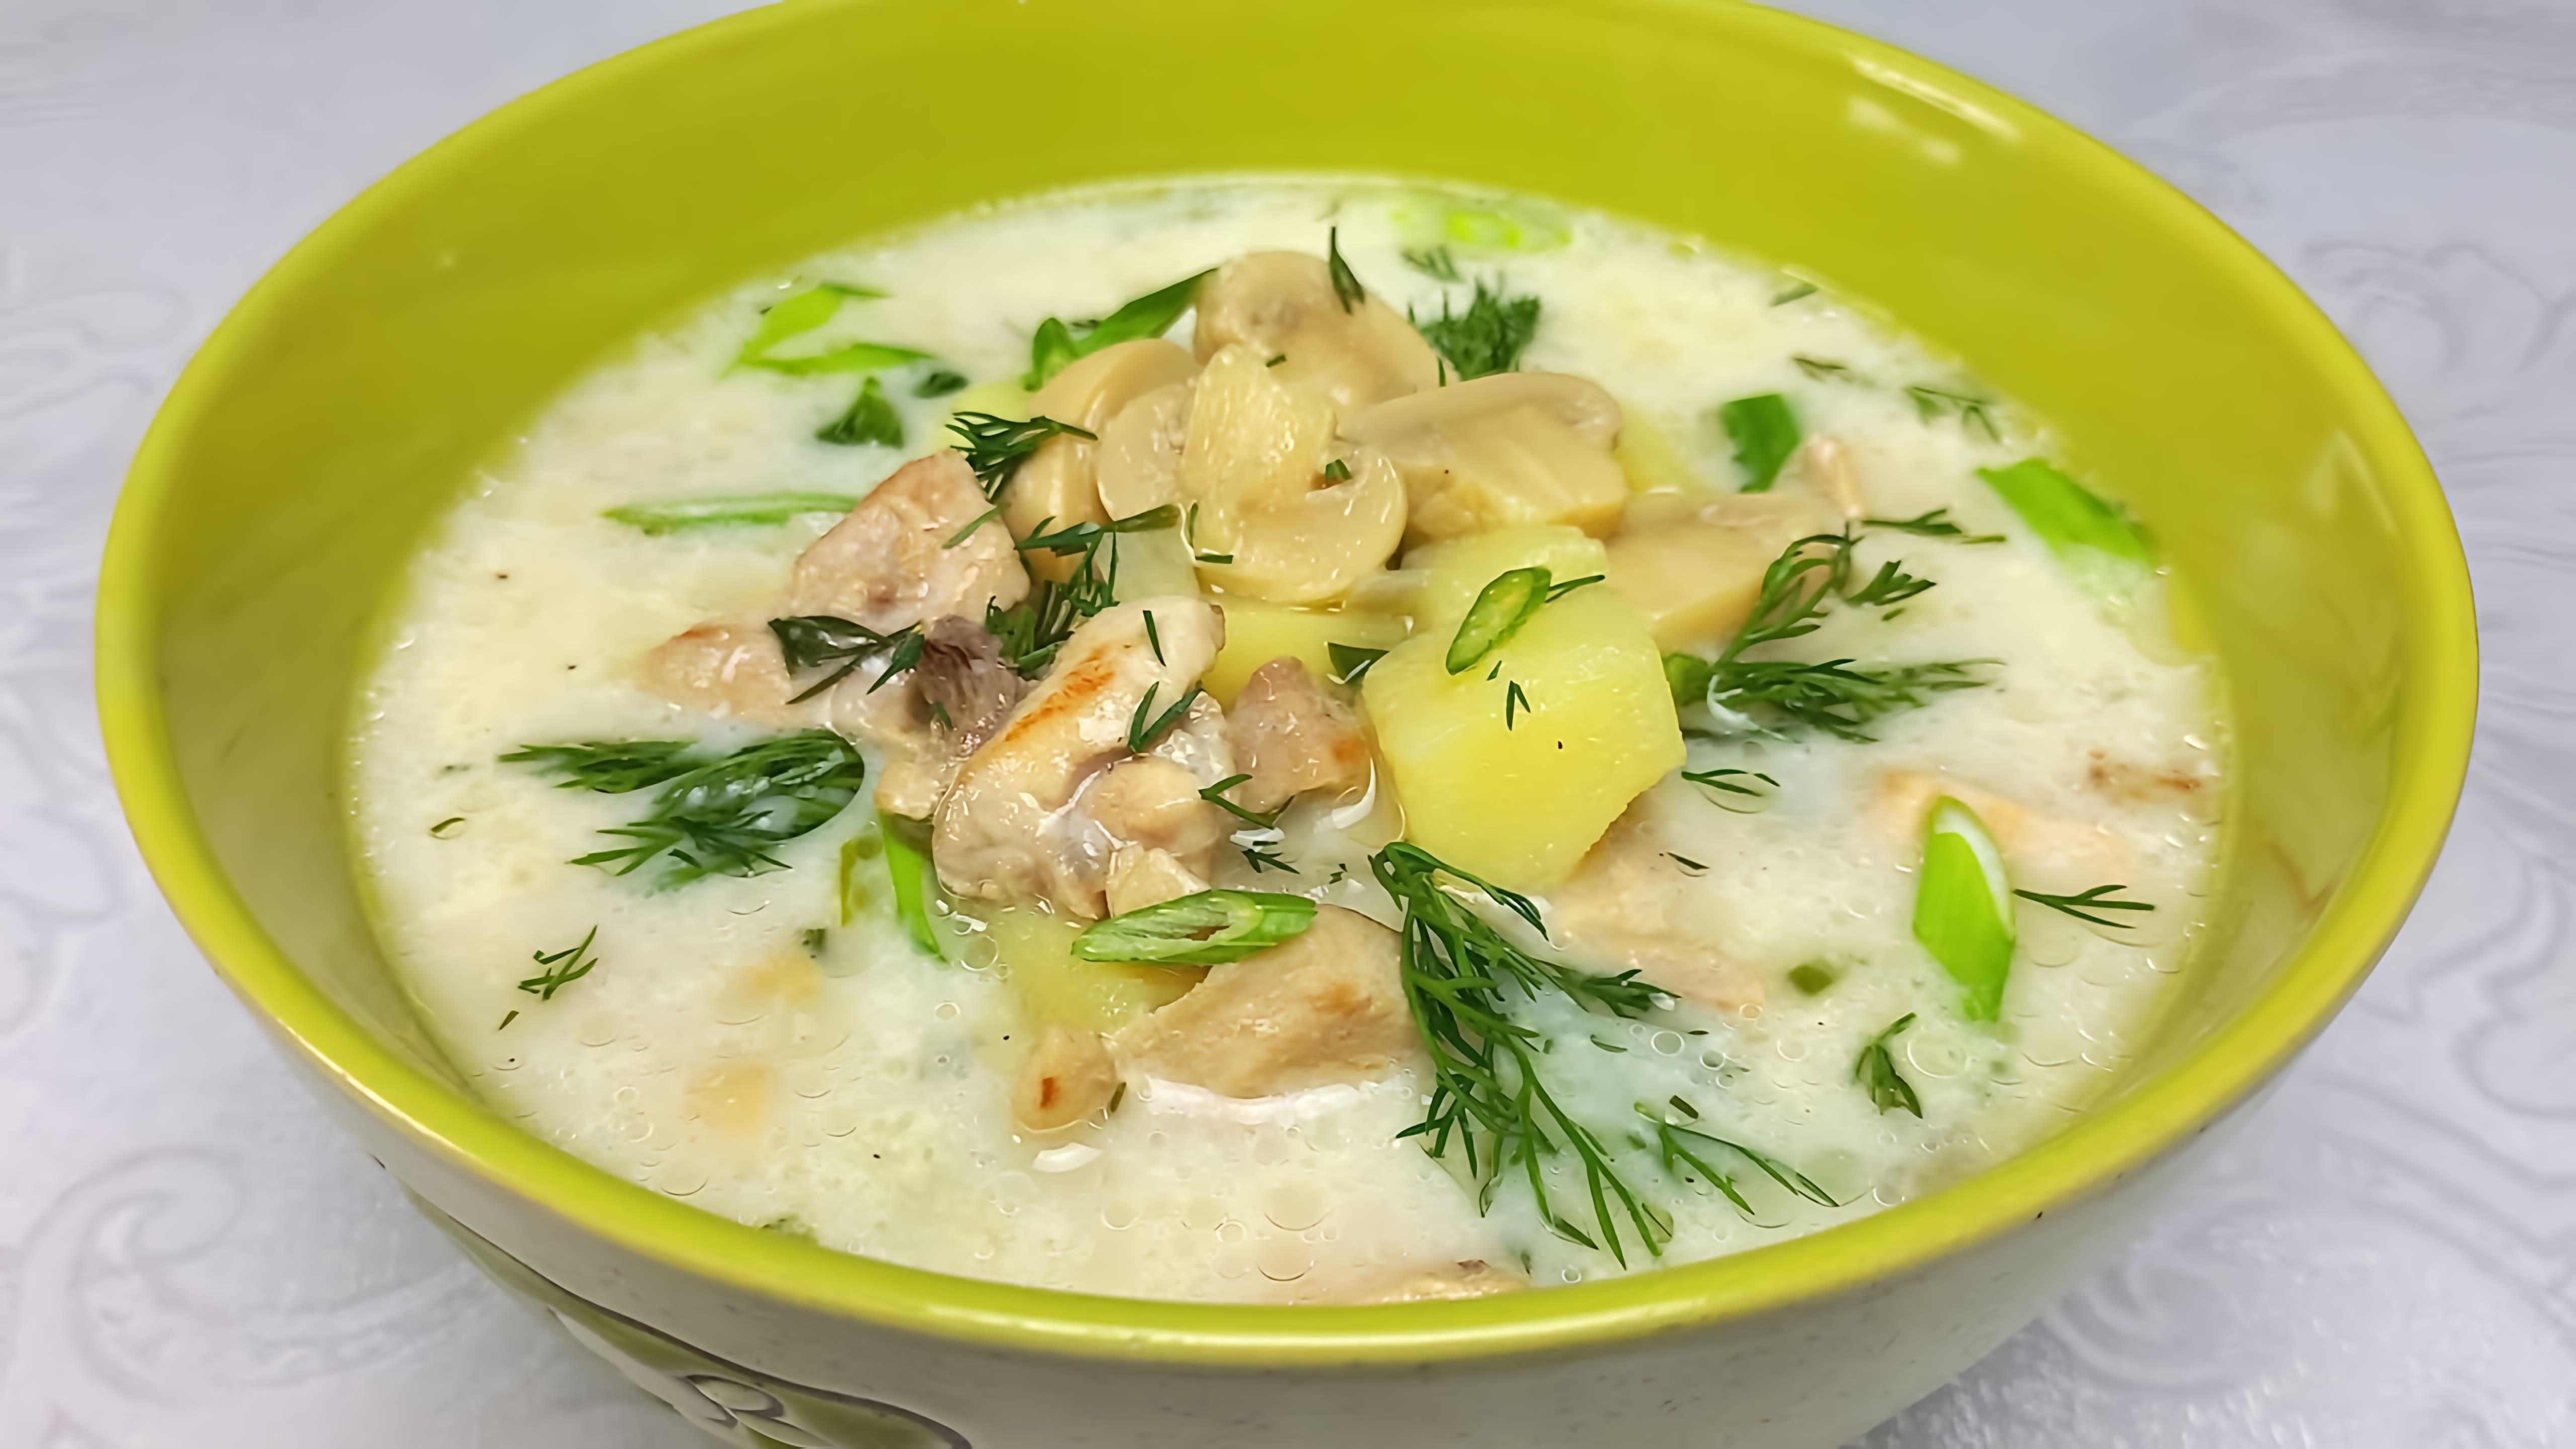 В этом видео демонстрируется процесс приготовления сливочного супа с курицей и грибами